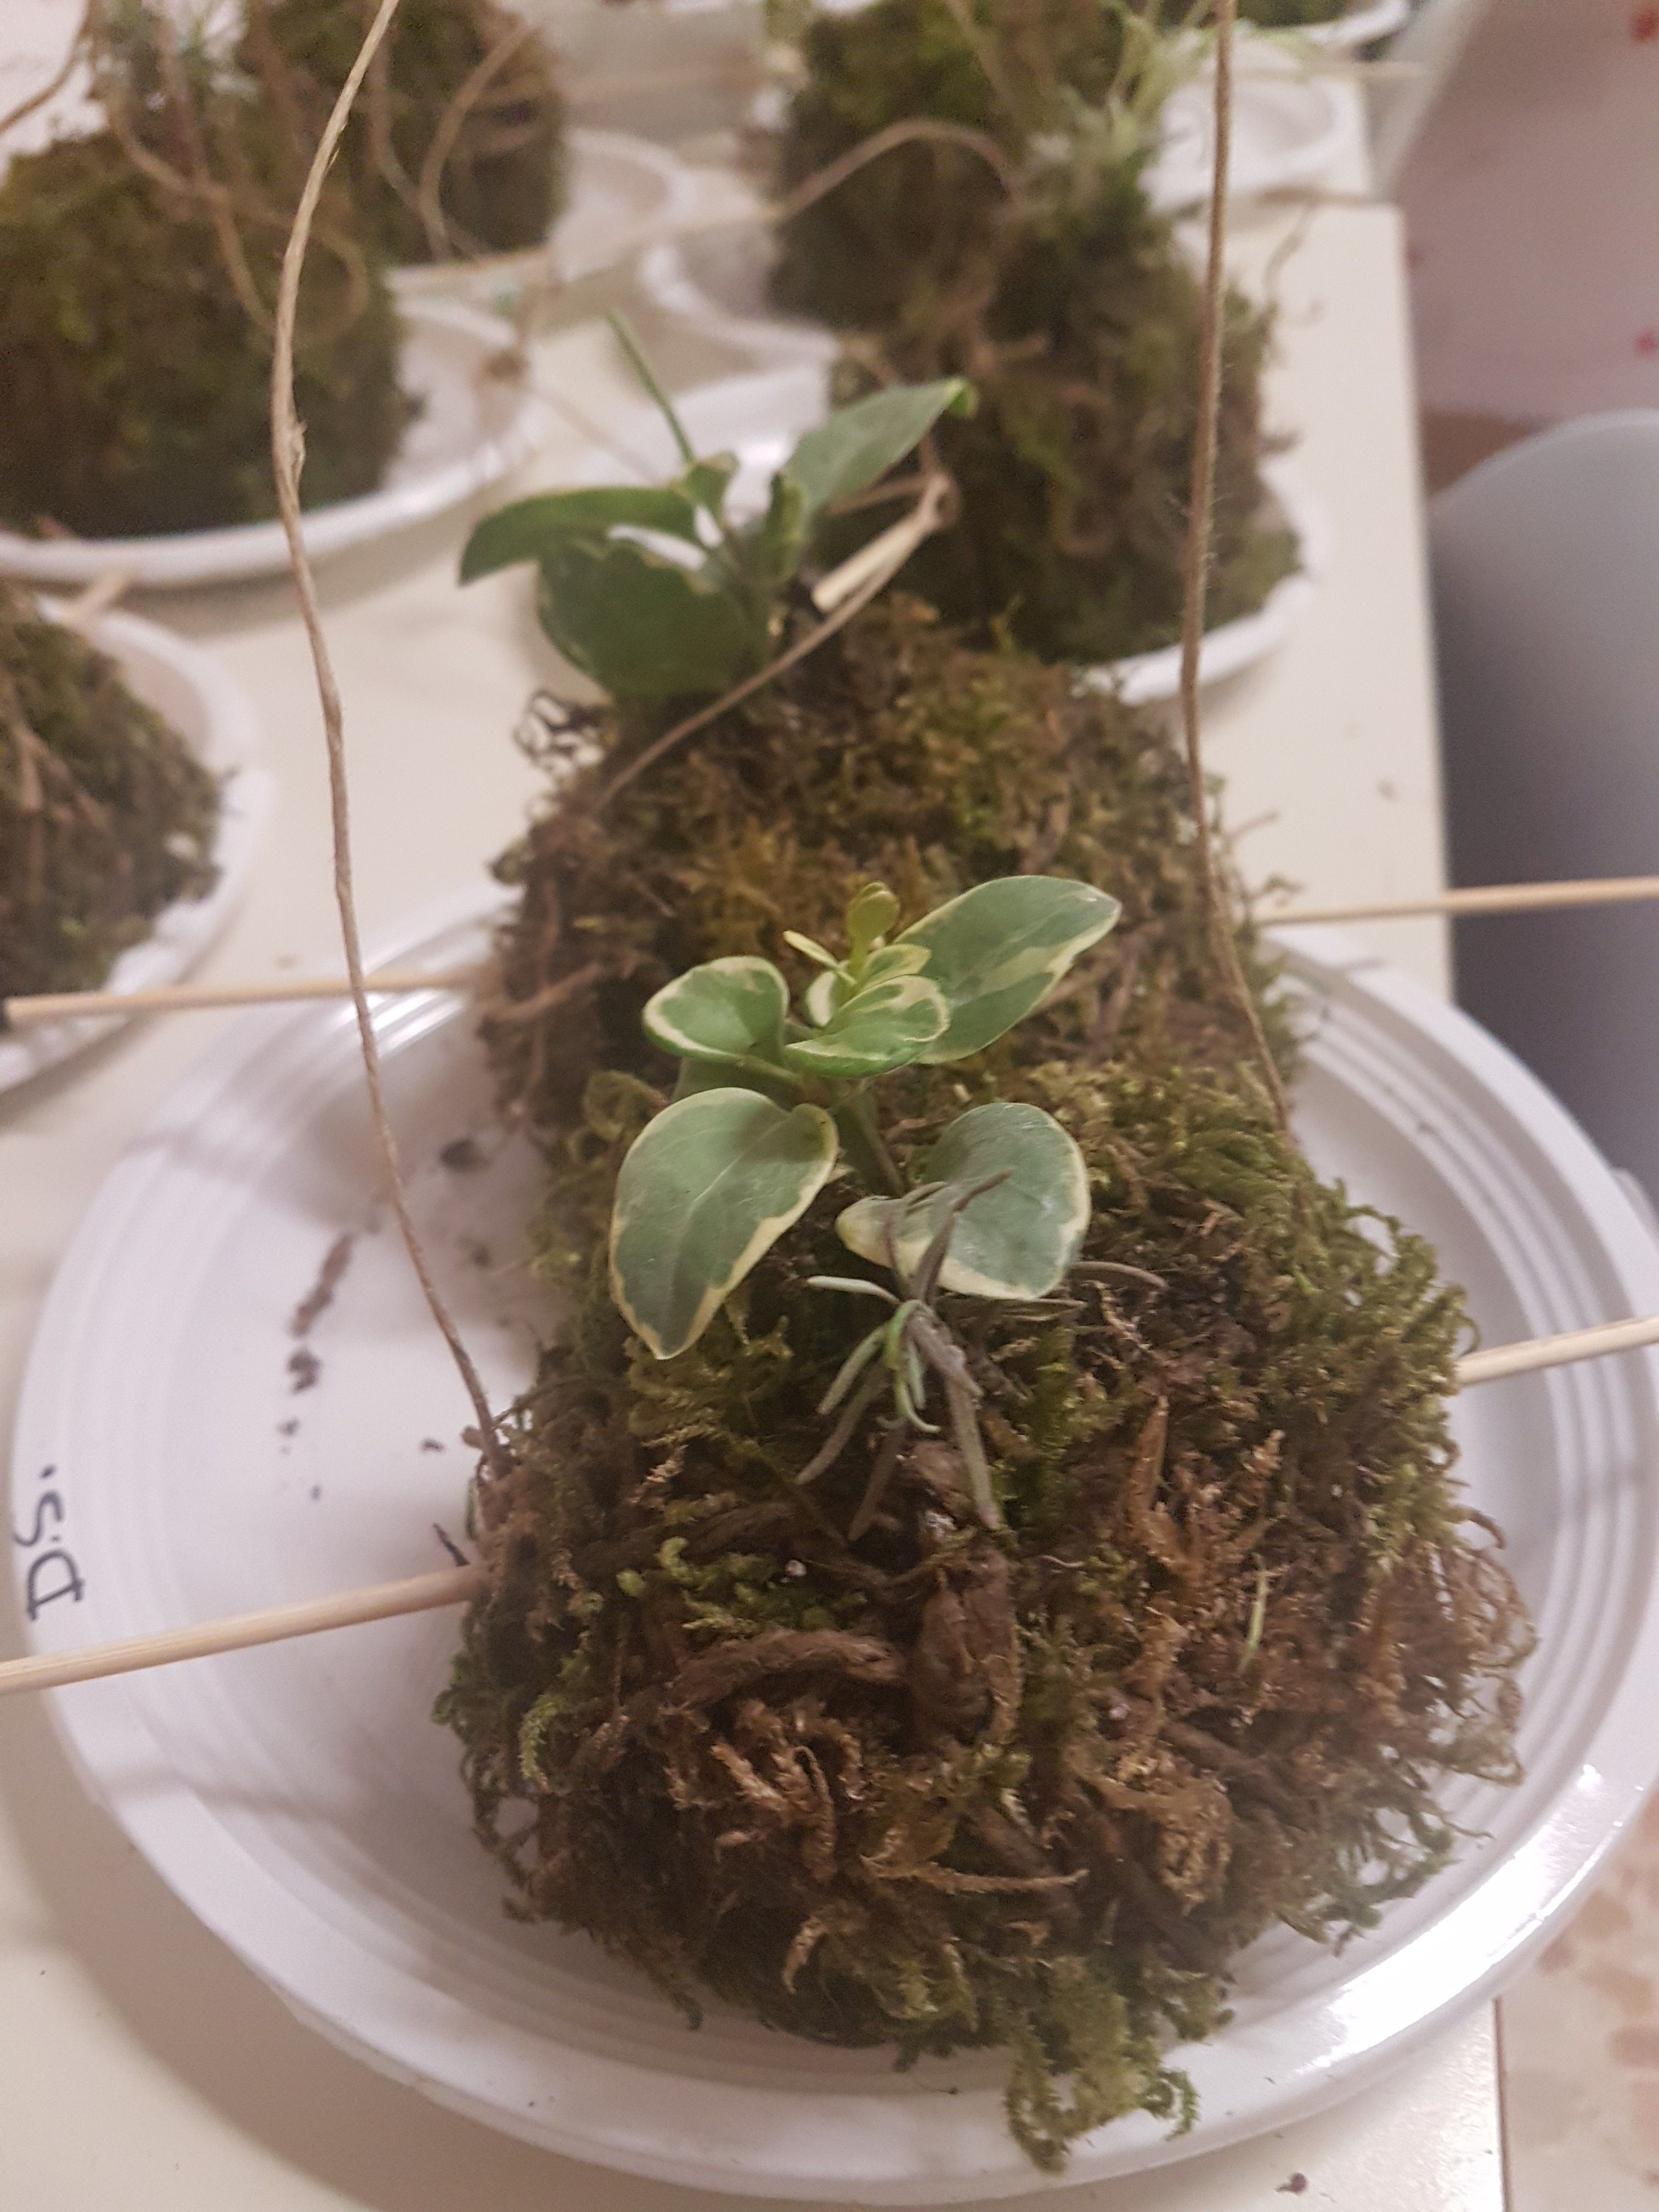 realizzazione di un kokedama piante giuapponesi sospese (materiale usato argilla e mischio e germogli di nuove piante) come simbolo di sostenibilità